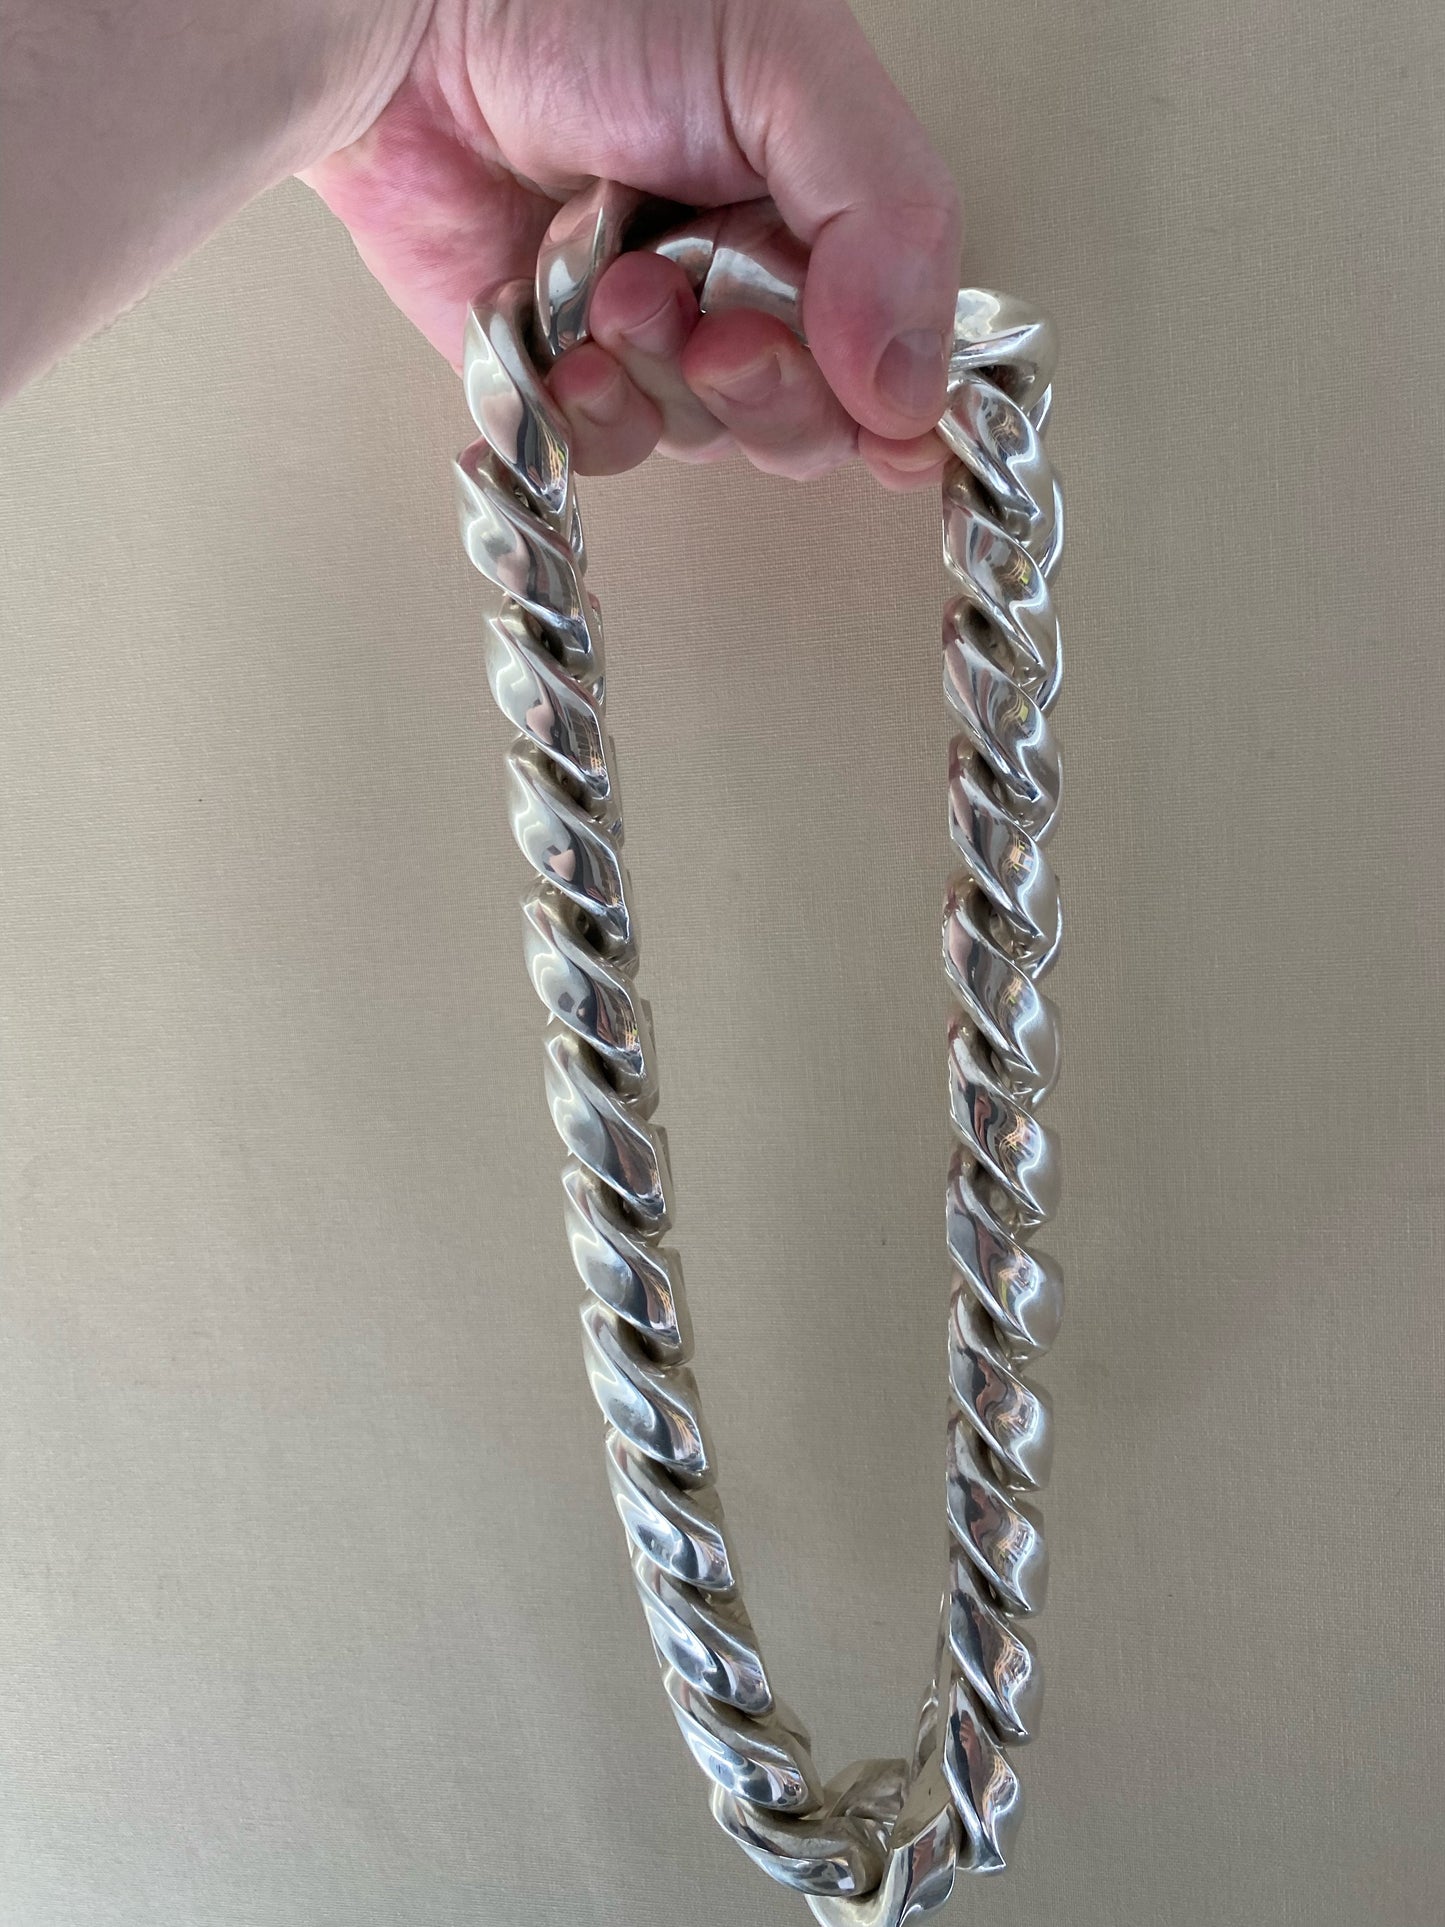 Huge Cuban Link Necklace - 40mm Wide